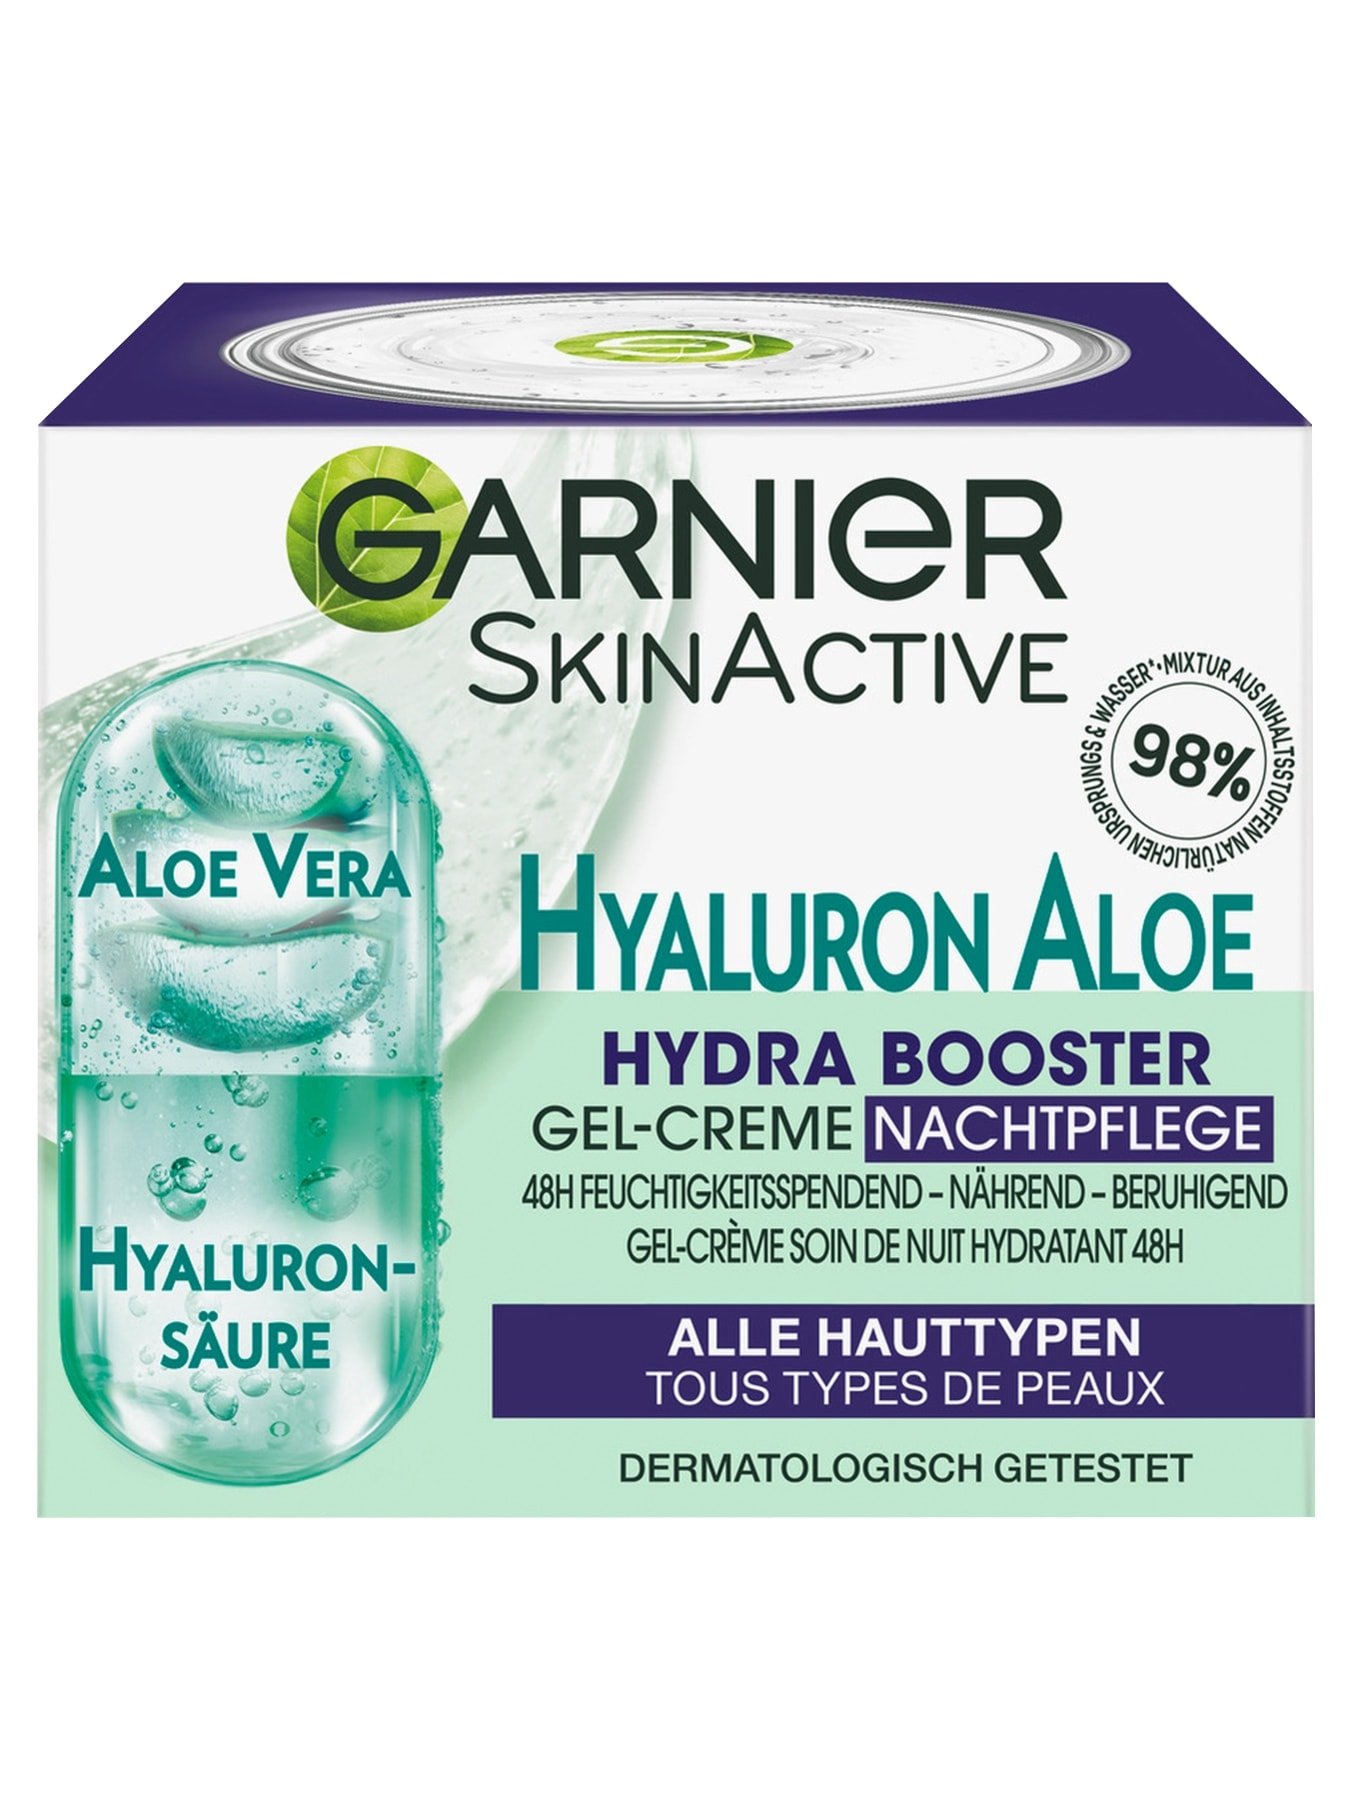 Booster Gel-Creme Nachtpflege Hyaluron Garnier Hydra Aloe |